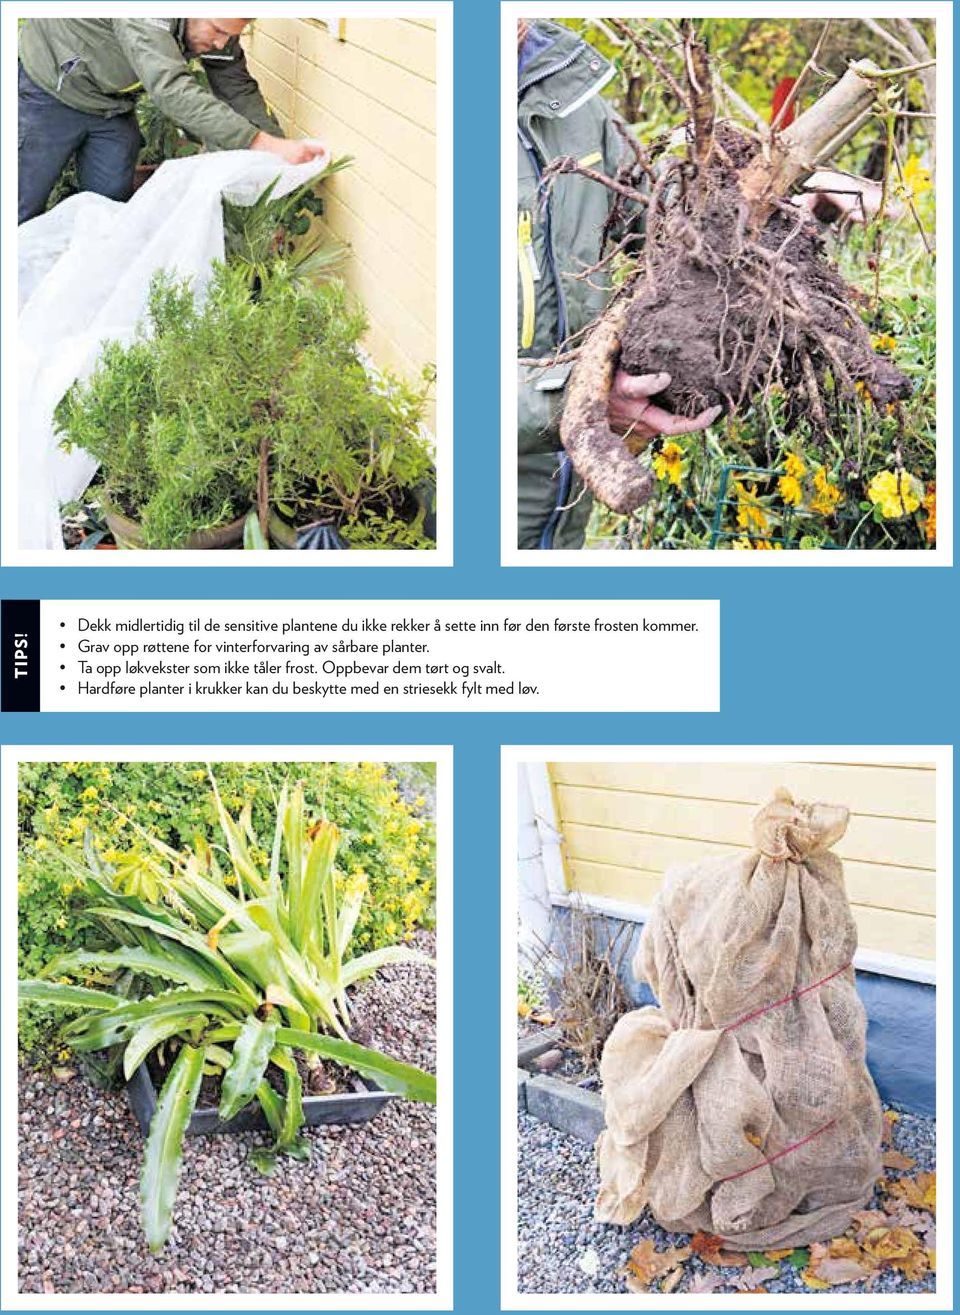 Grav opp røttene for vinterforvaring av sårbare planter.